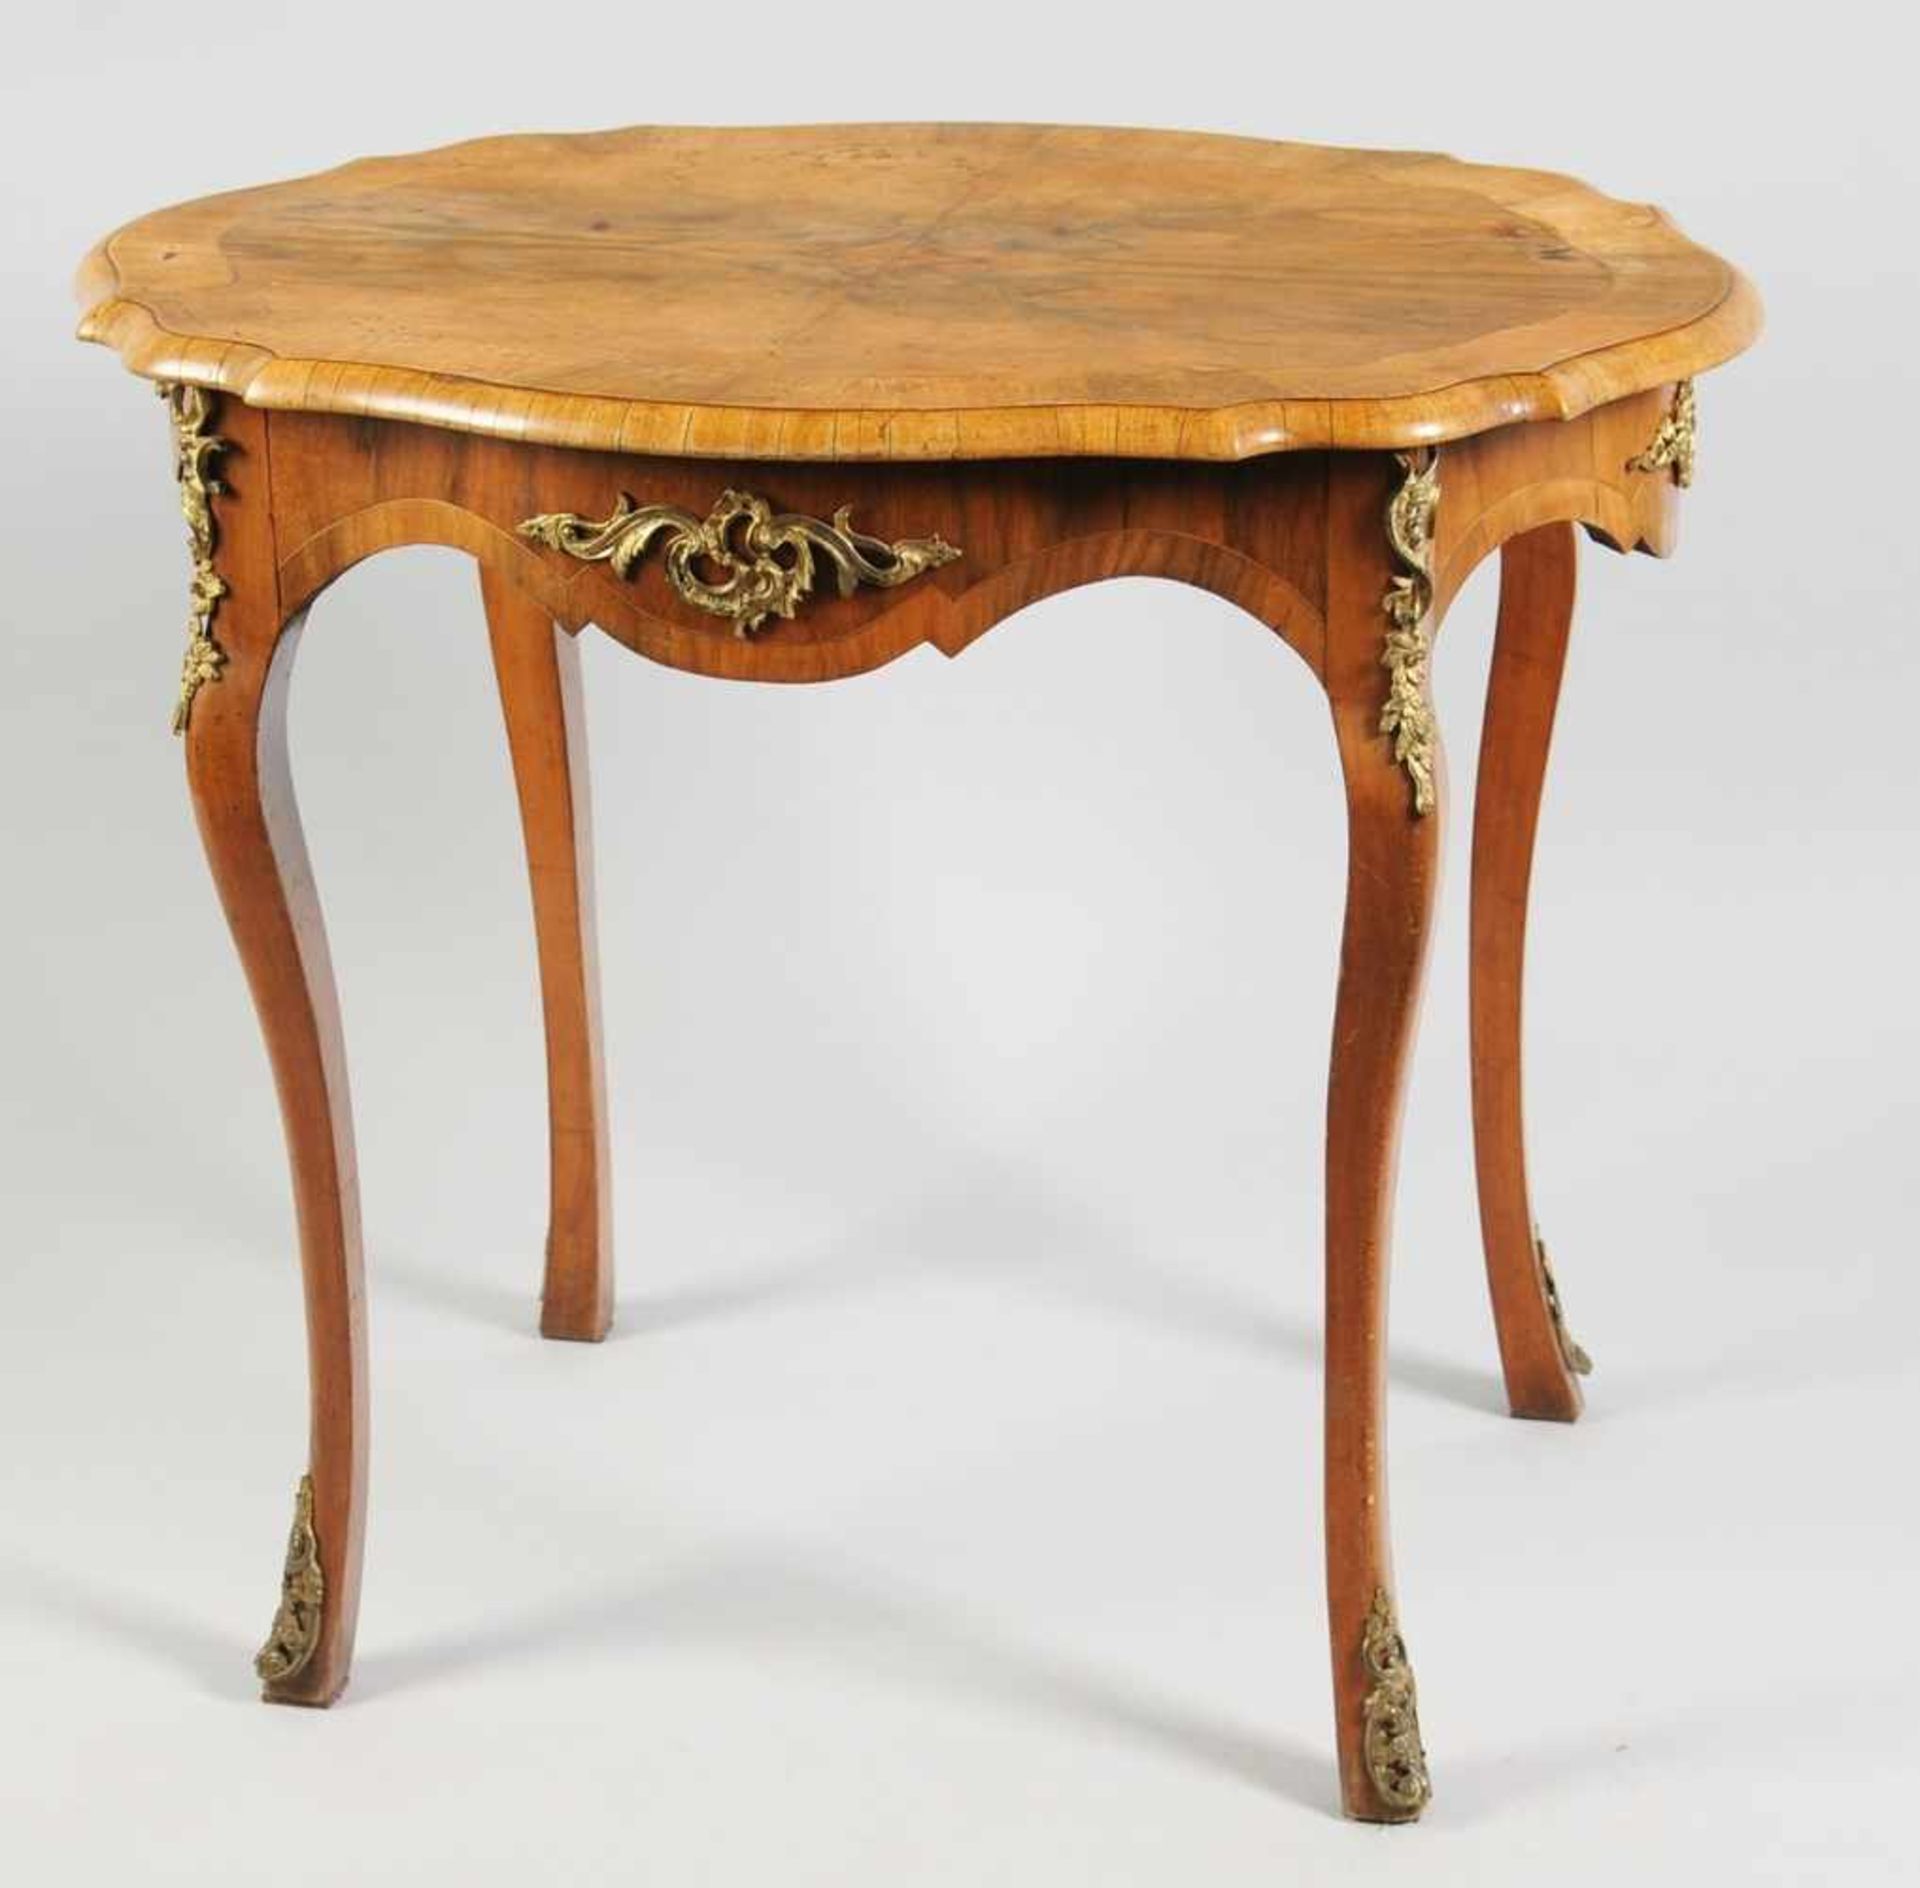 Dresdner-Barock-SalontischNussbaum, massiv u. furniert. Ovaler Tisch in stiltypischer Formsprache.